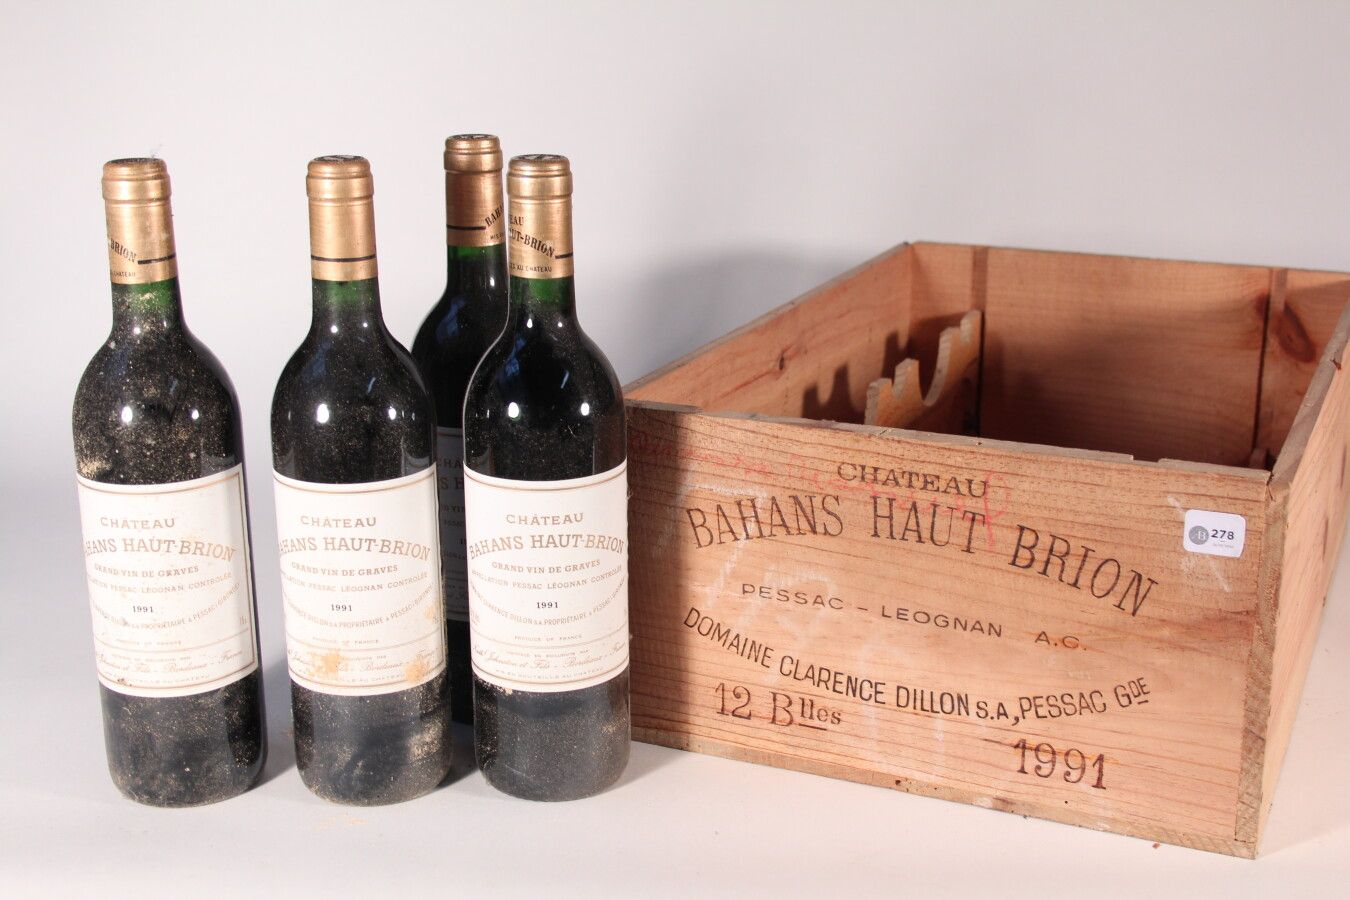 Null 1991 - Bahans Haut Brion

Pessac-Léognan Rosso - 6 bottiglie